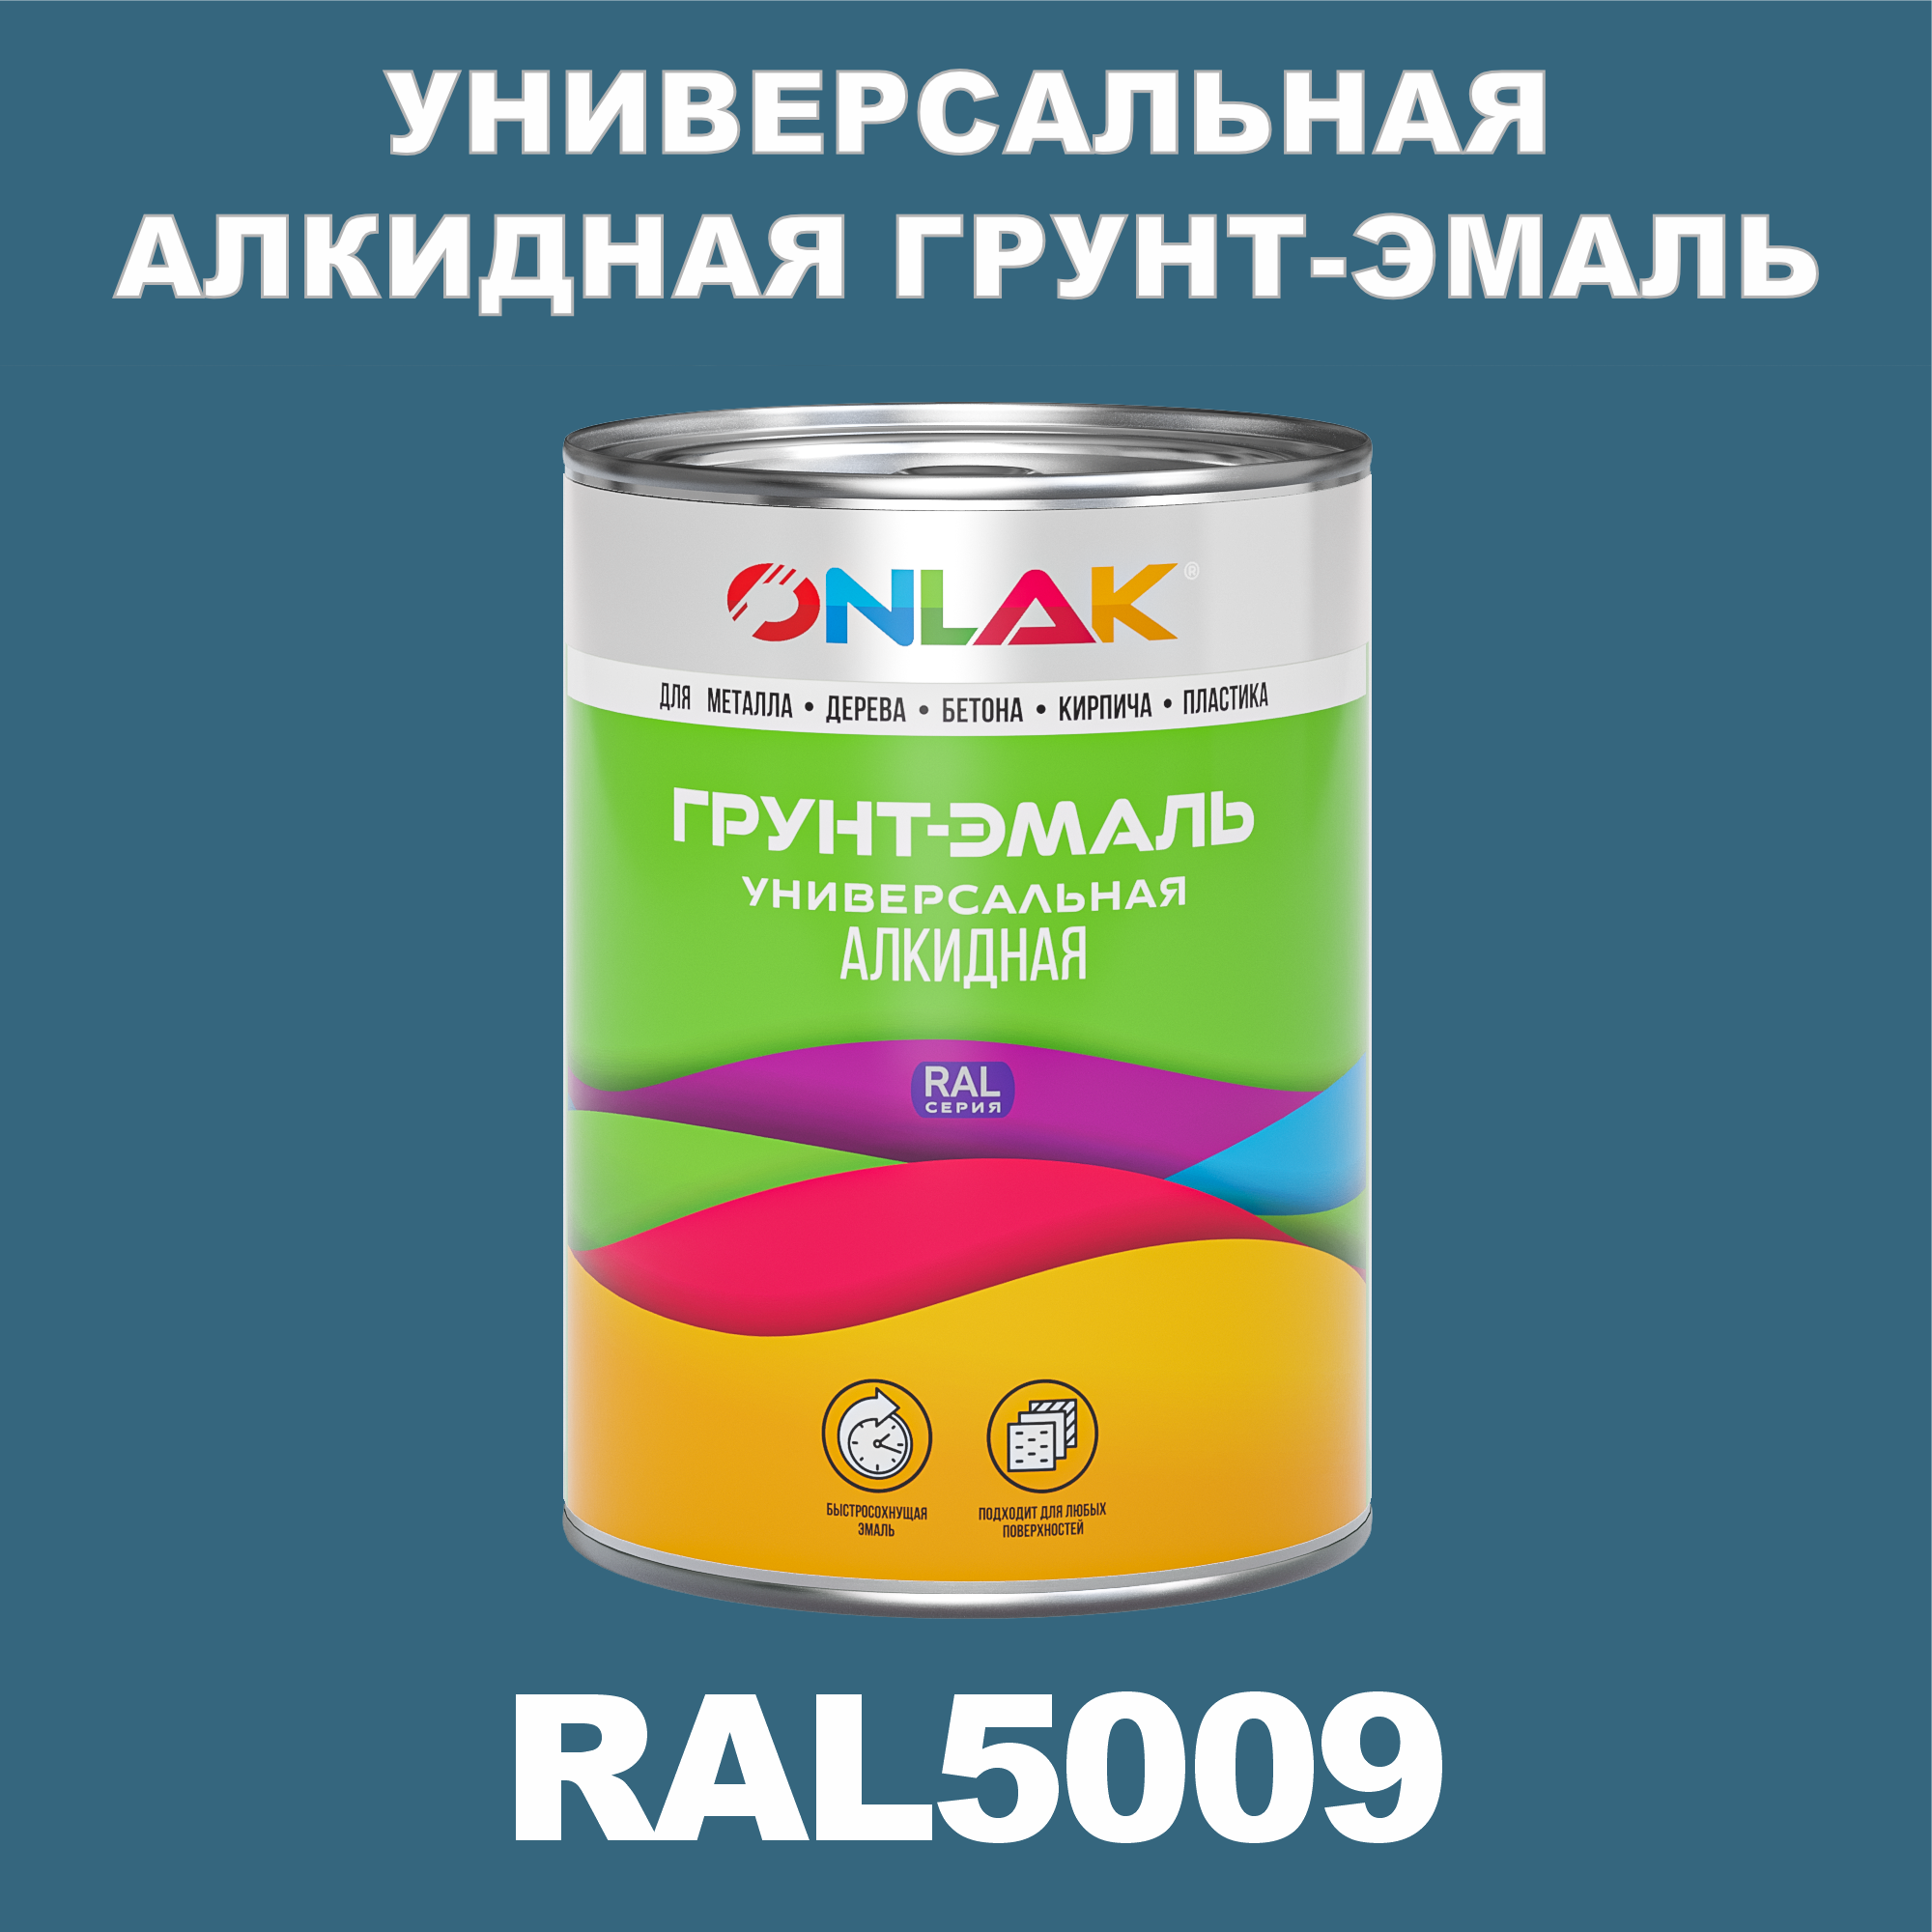 Грунт-эмаль ONLAK 1К RAL5009 антикоррозионная алкидная по металлу по ржавчине 1 кг грунт для масла mighty oak